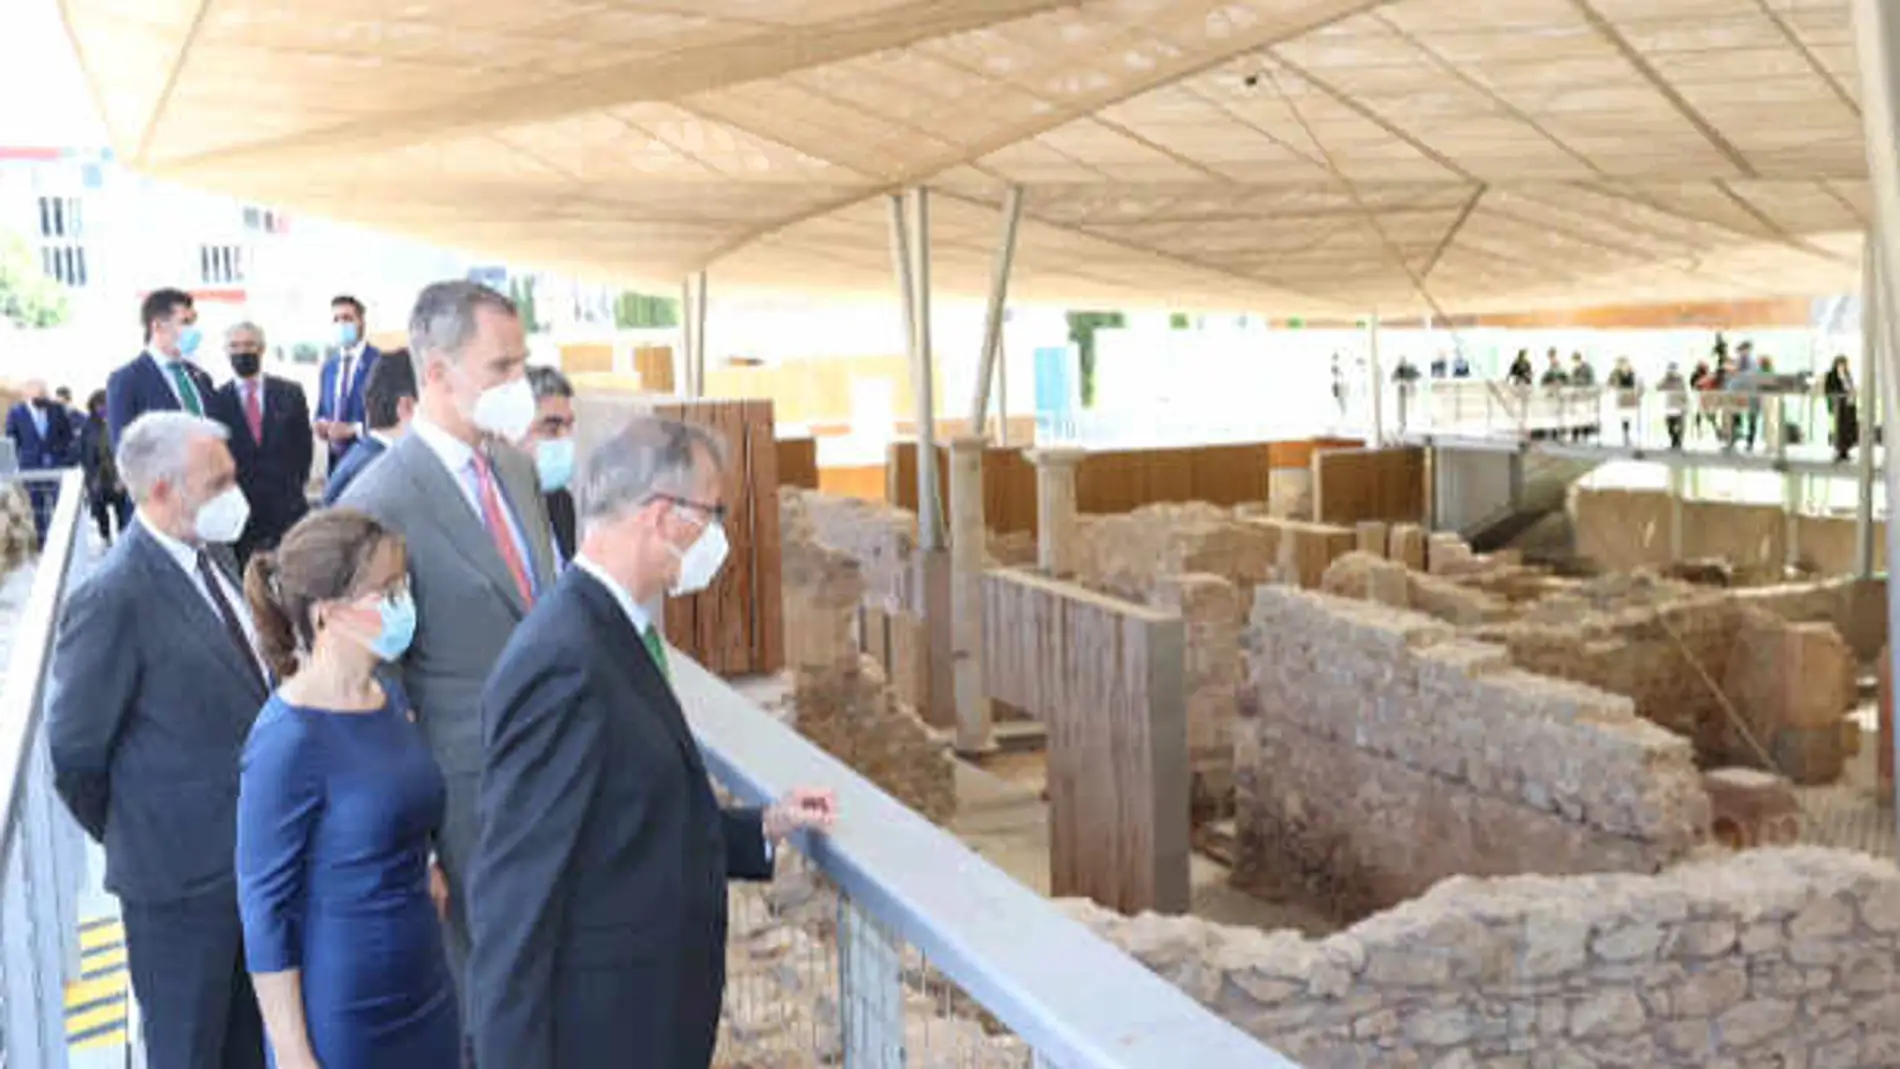 El Rey Felipe VI ha inaugurado el nuevo Museo Foro Romano Molinete de Cartagena